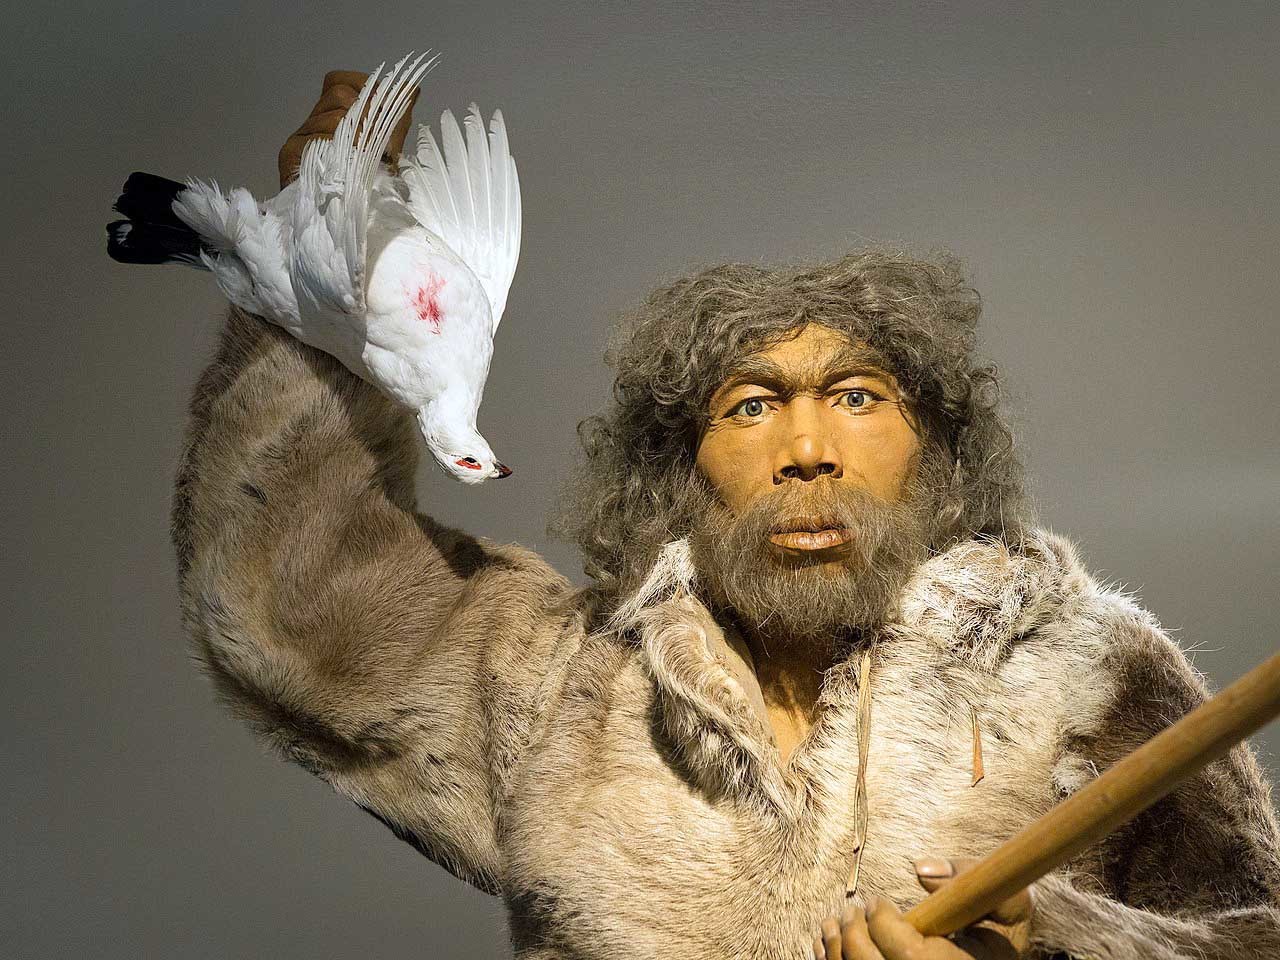 representación de un hombre de neandertal